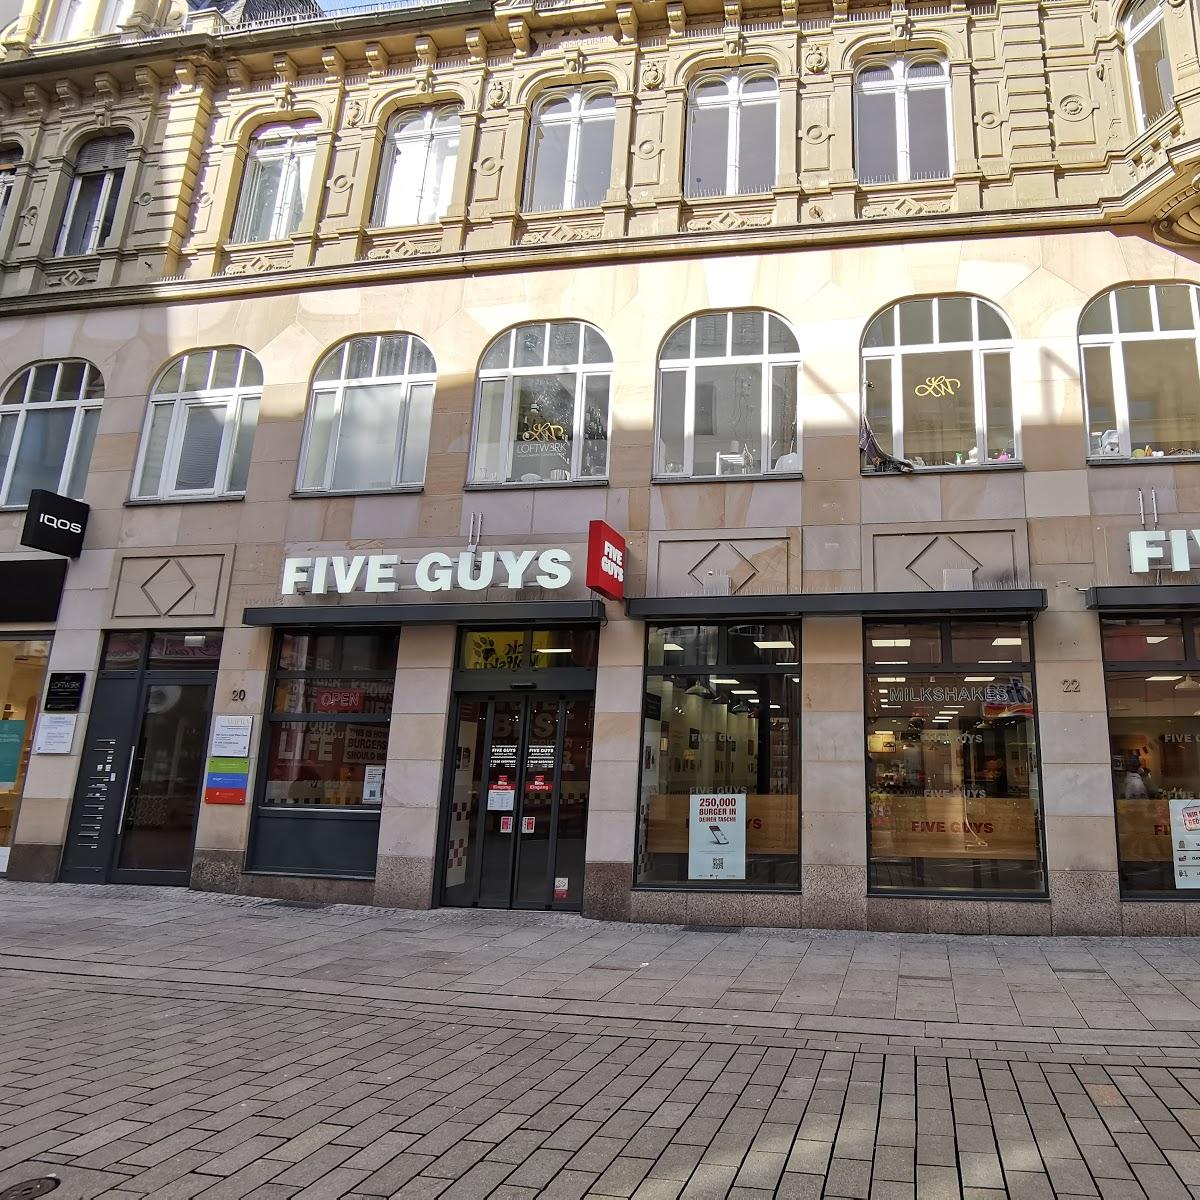 Restaurant "Five Guys" in Wiesbaden